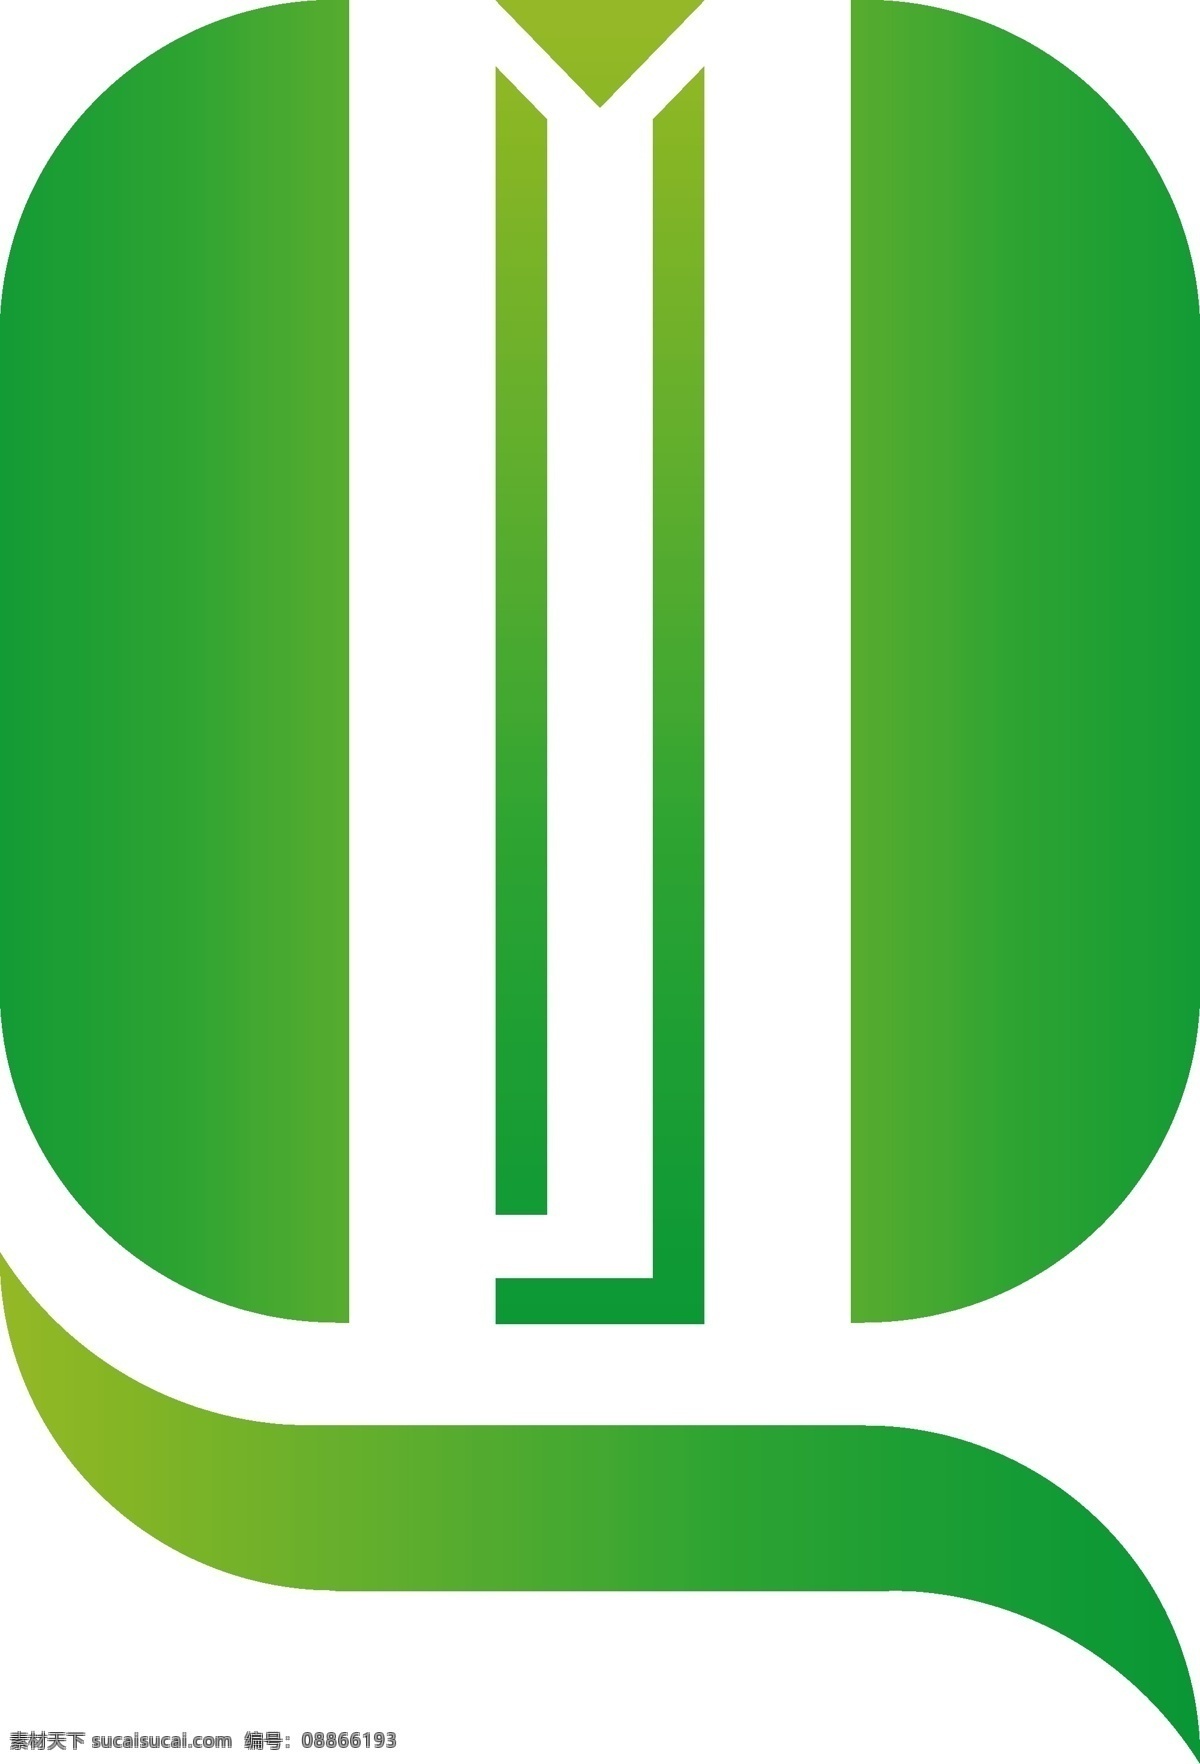 字母 q 变形 企业 logo qlogo 英文 大写 图标 logo设计